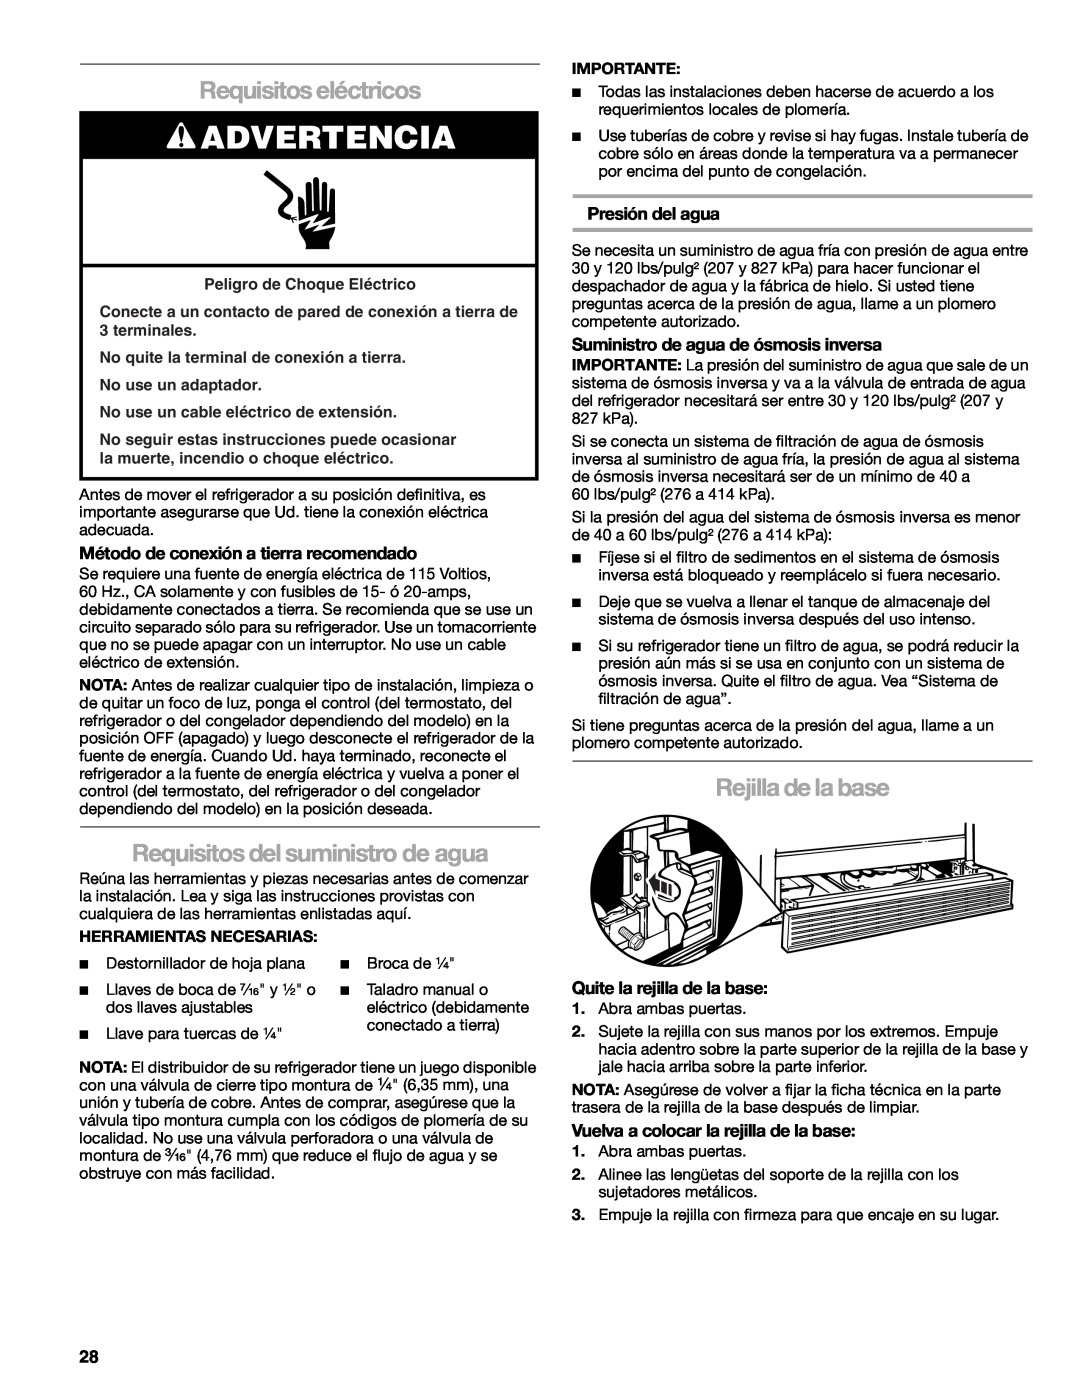 Sears T1KB2/T1RFKB2 manual Requisitos eléctricos, Requisitos del suministro de agua, Rejilla de la base, Presión del agua 